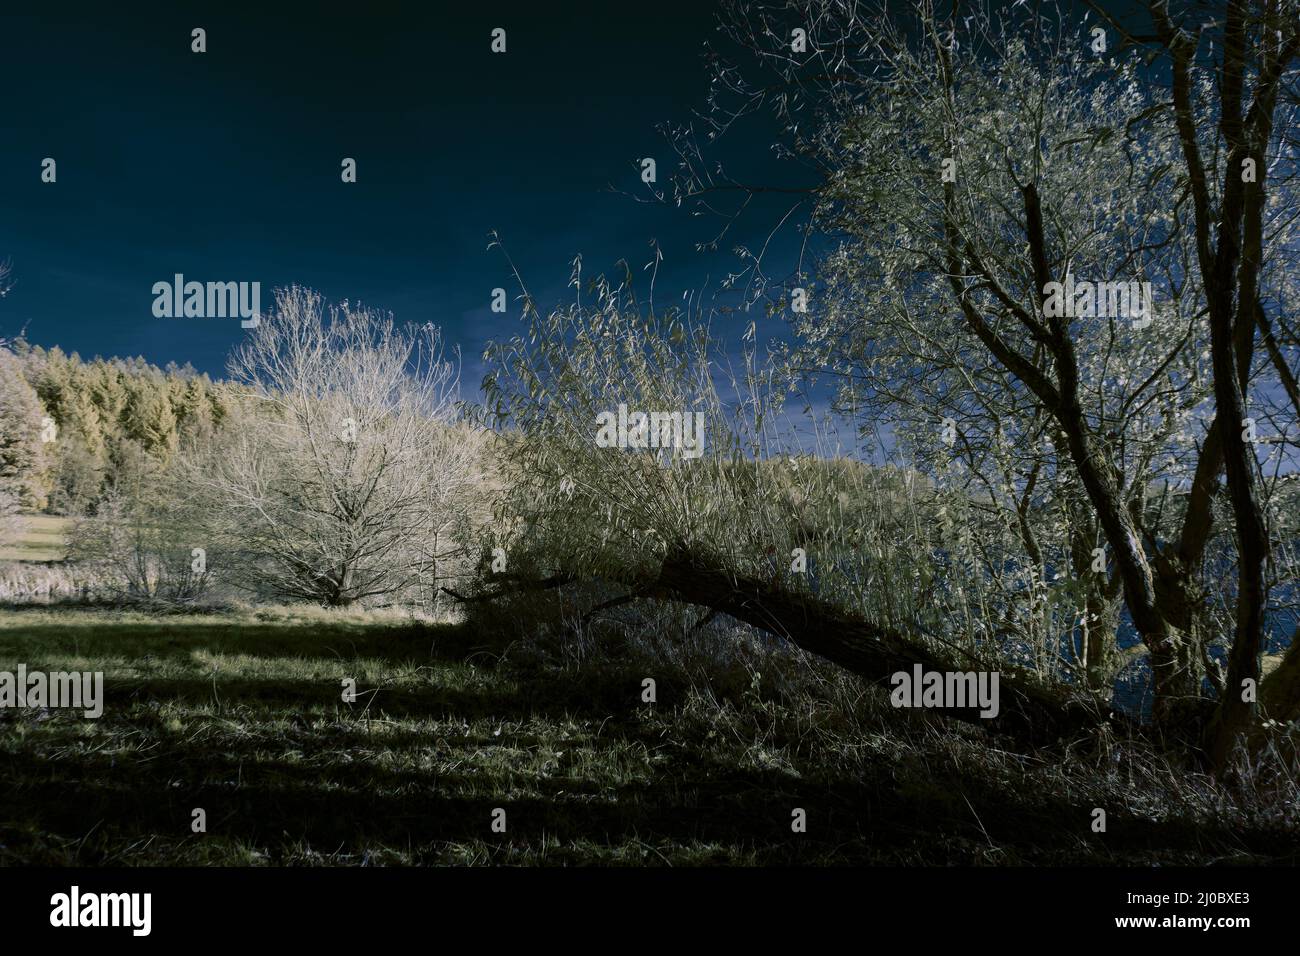 fotografía infrarroja - surrealista ir foto de paisaje con árboles bajo cielo nublado - el arte de nuestro mundo y plantas en la cámara infrarroja invisible Foto de stock